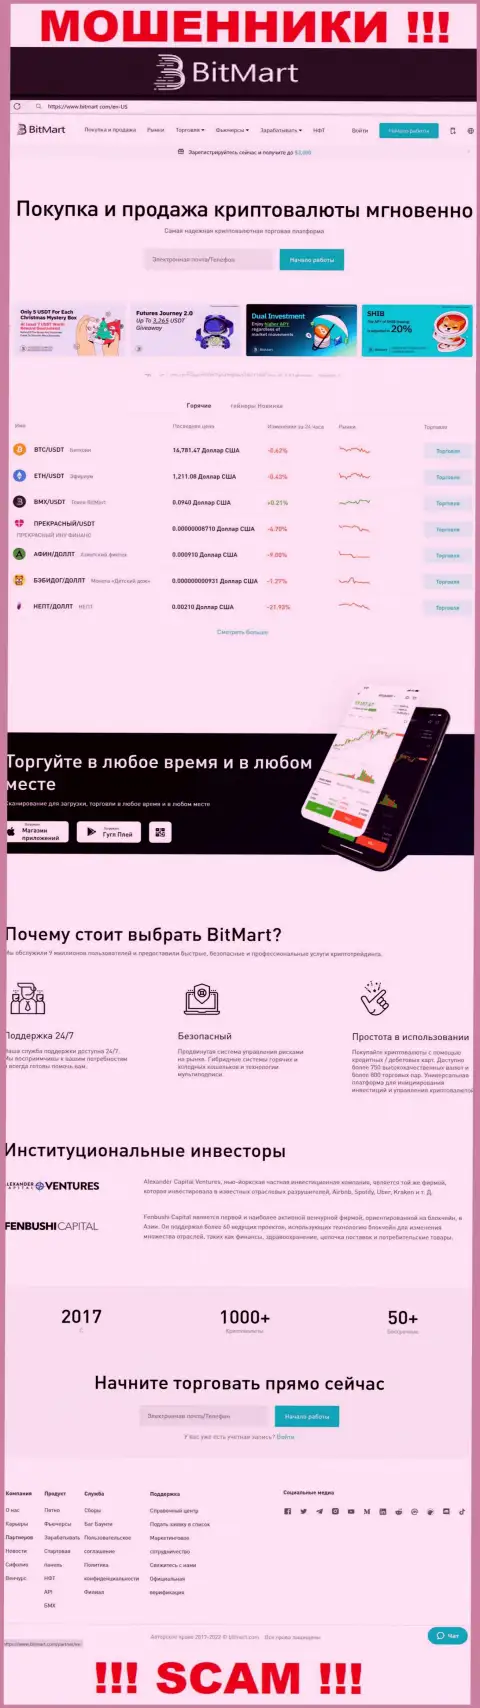 Внешний вид официального сайта жульнической компании BitMart